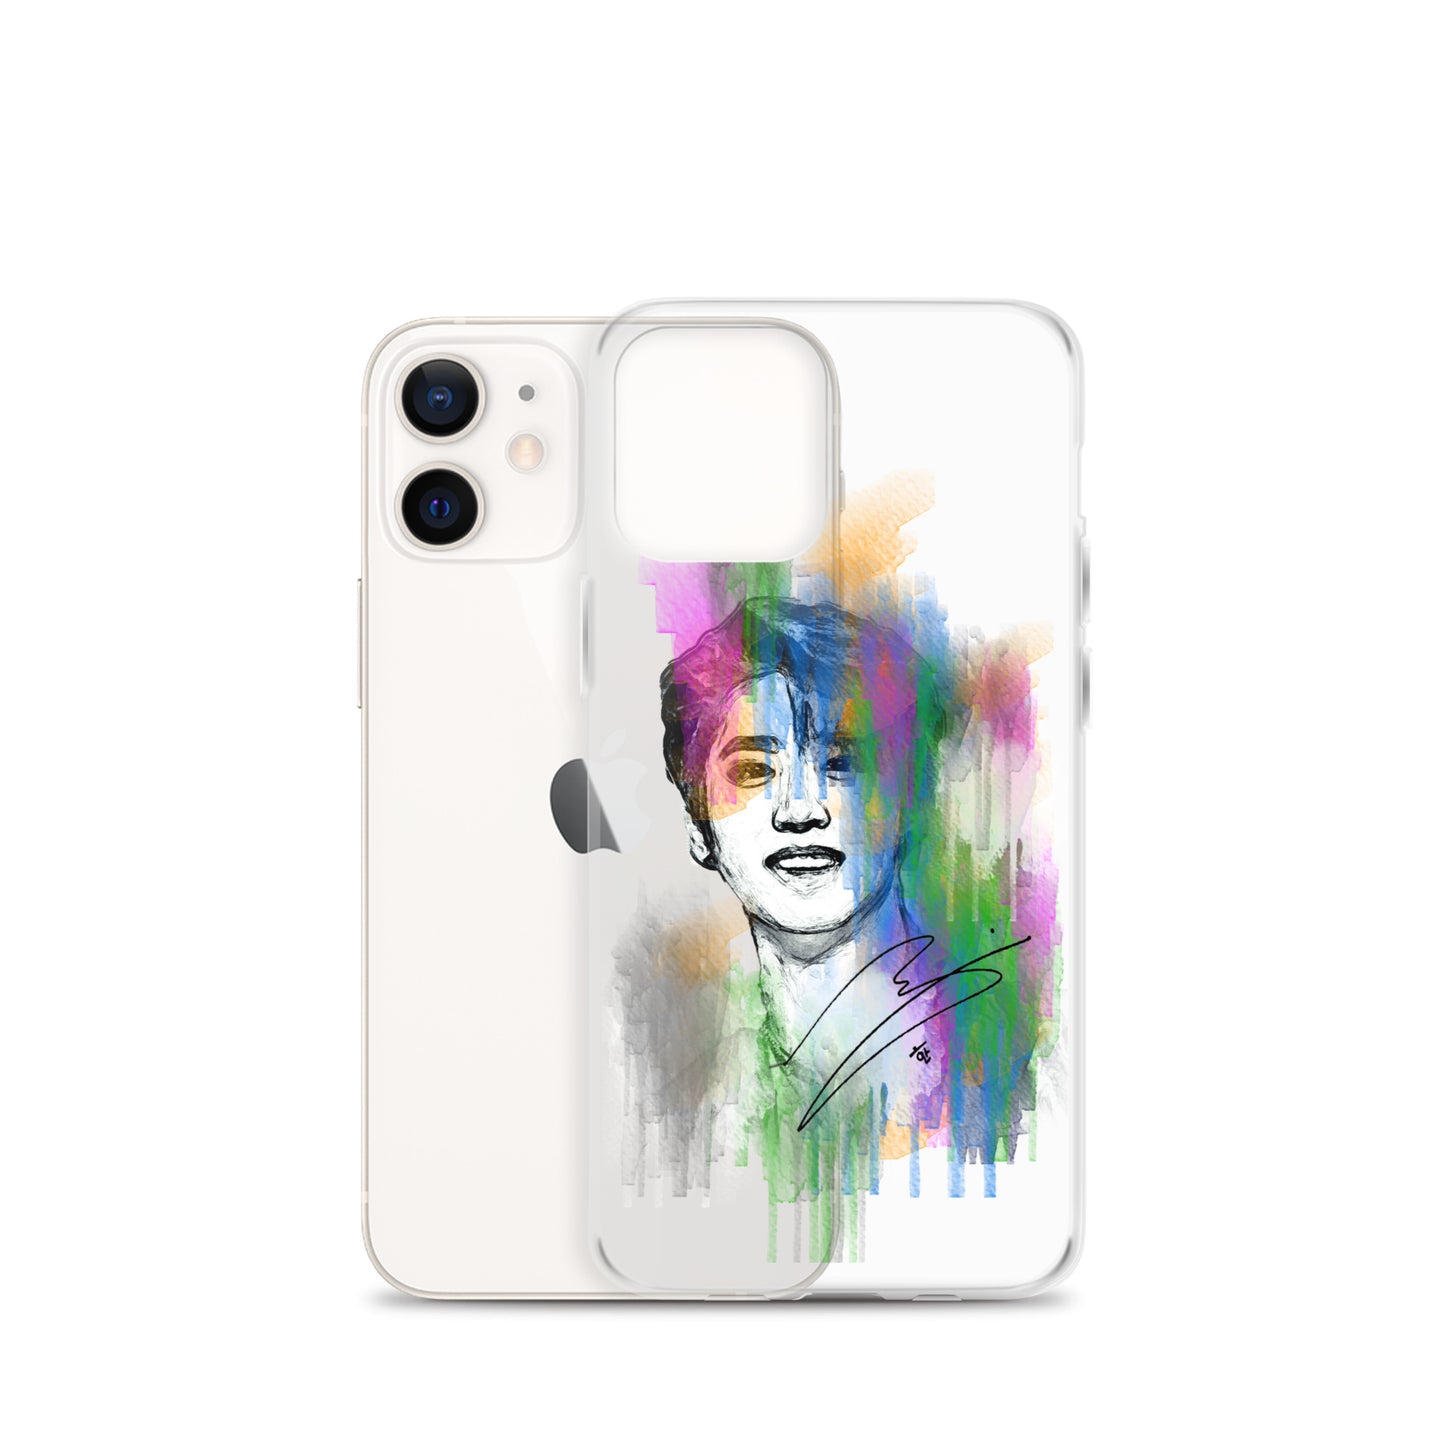 Stray Kids Han, Han Ji-sung Waterpaint Portrait iPhone Case